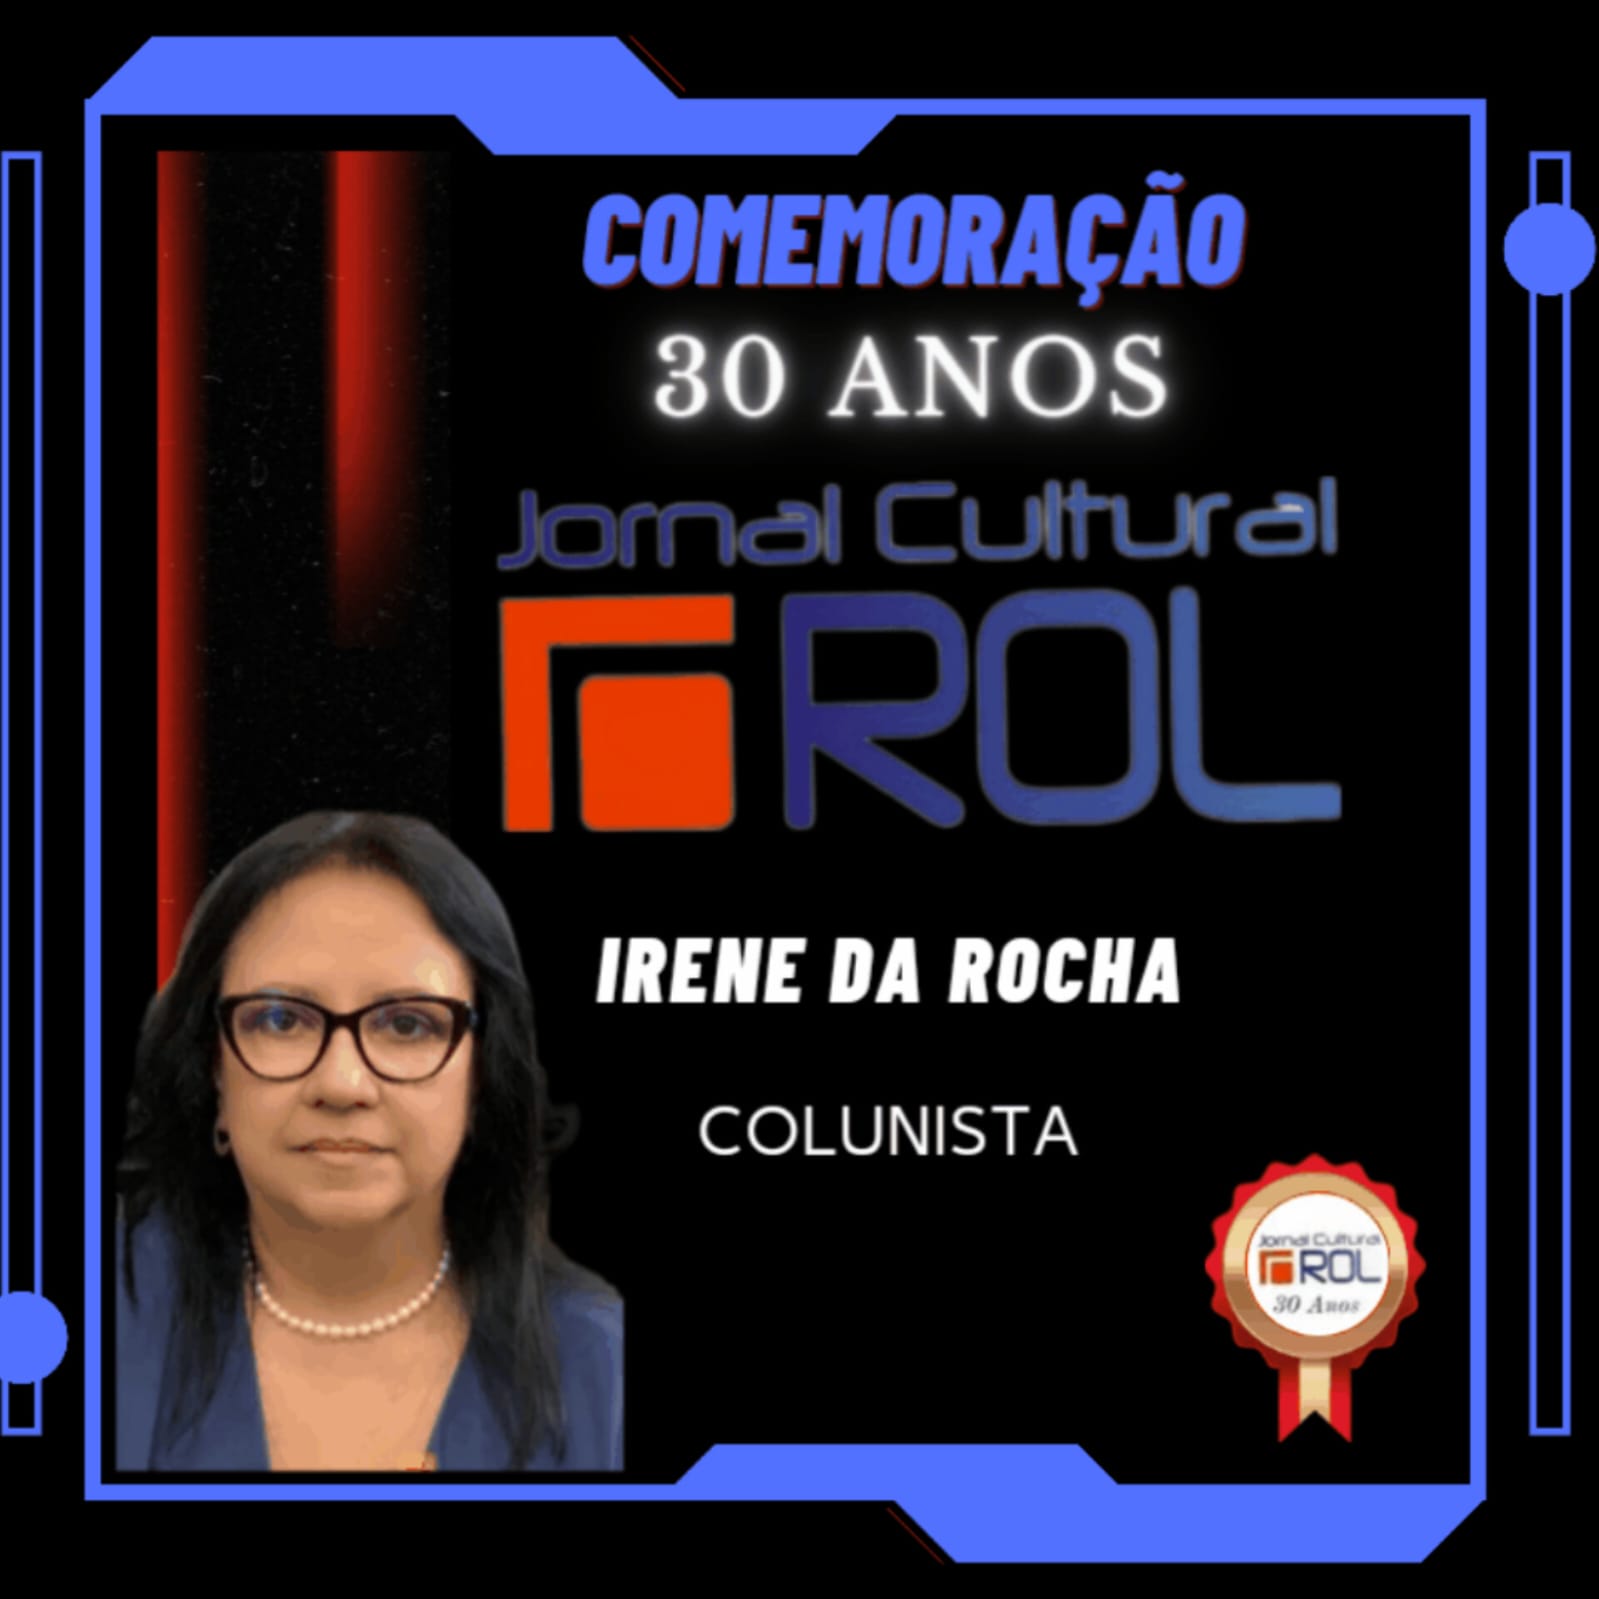 Card Comemorativo dos 30 anos do JOrnal Cultural ROL - Irene Rocha